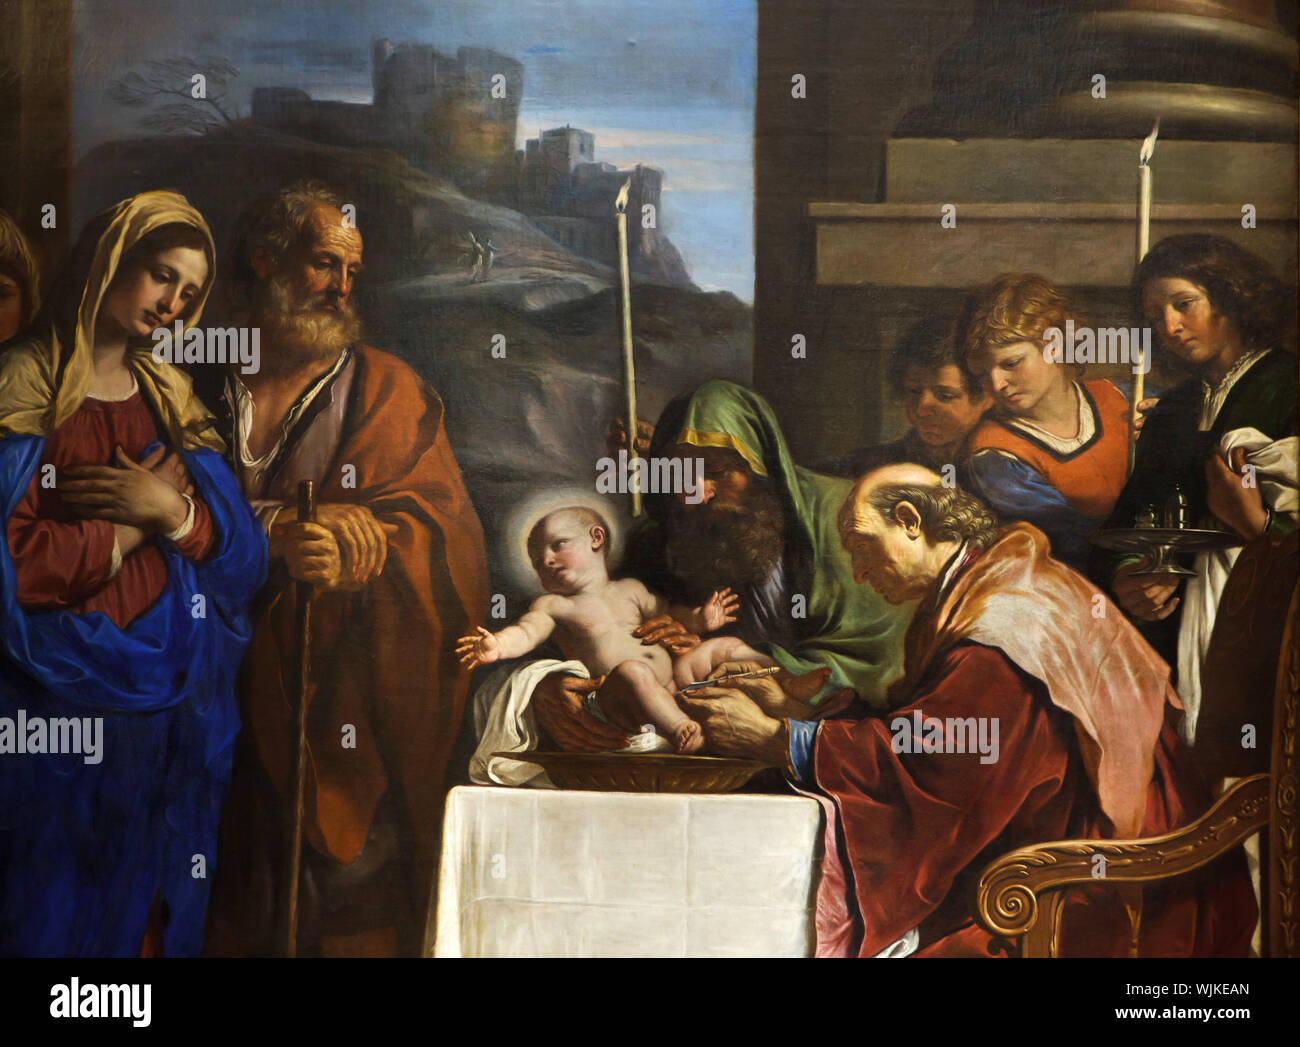 Detail des Gemäldes "Die Beschneidung" von italienischen Barock Maler Giovanni Francesco Barbieri besser bekannt als Guercino (1646) im Museum der Schönen Künste (Musée des Beaux-Arts de Lyon) in Lyon, Frankreich. Stockfoto